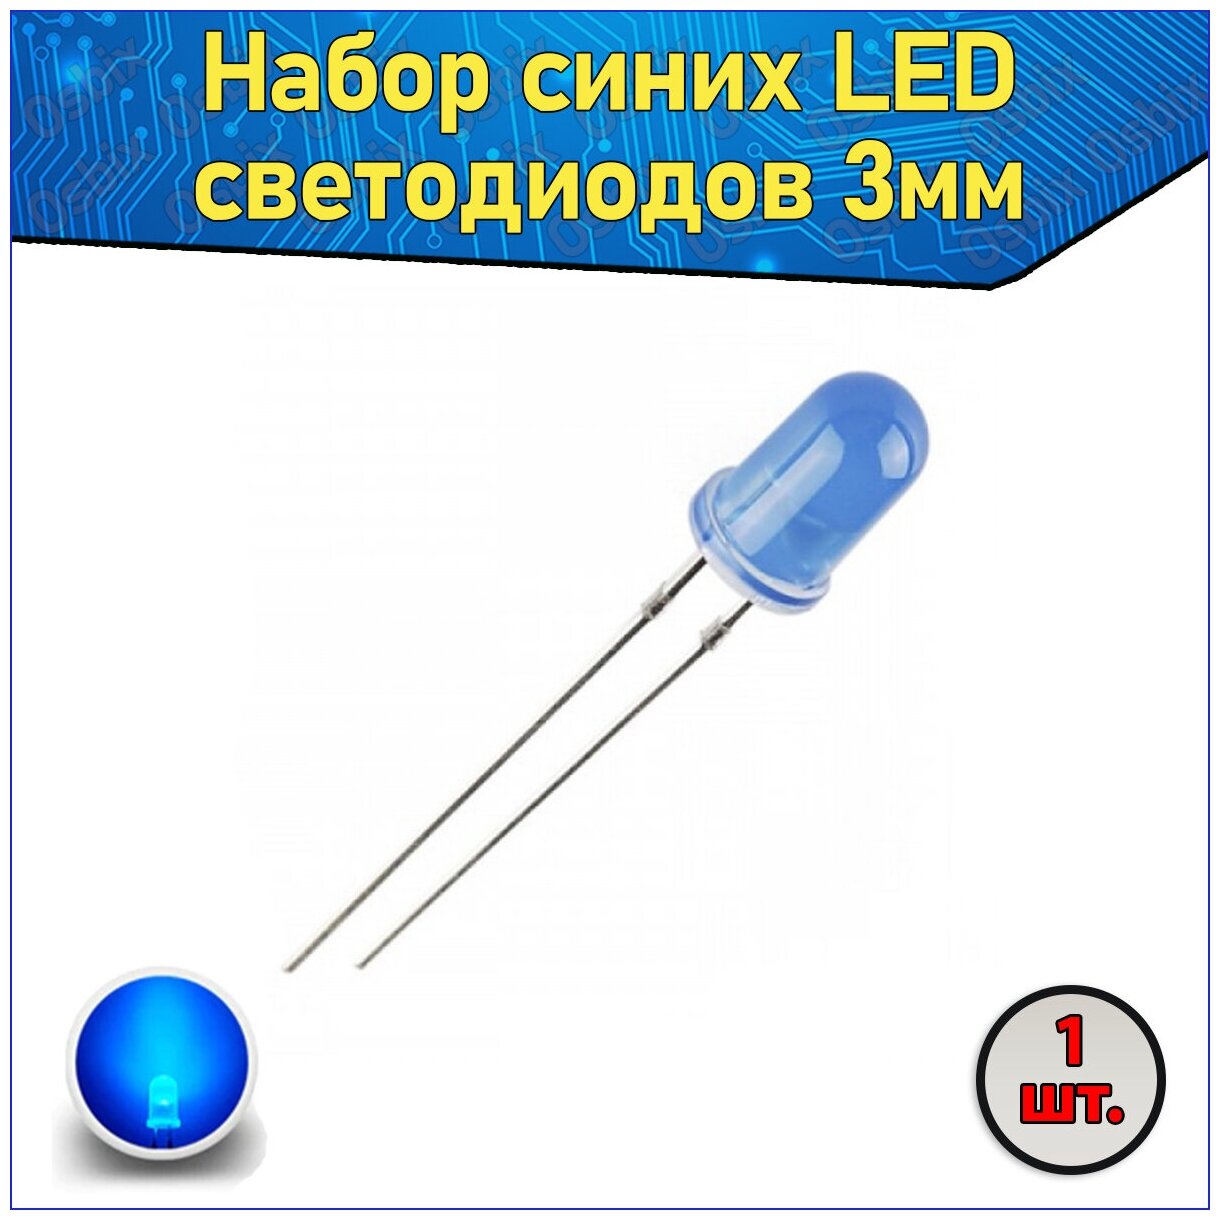 Набор синих LED светодиодов 3мм 1 шт. с короткими ножками & Комплект F3 LED diode